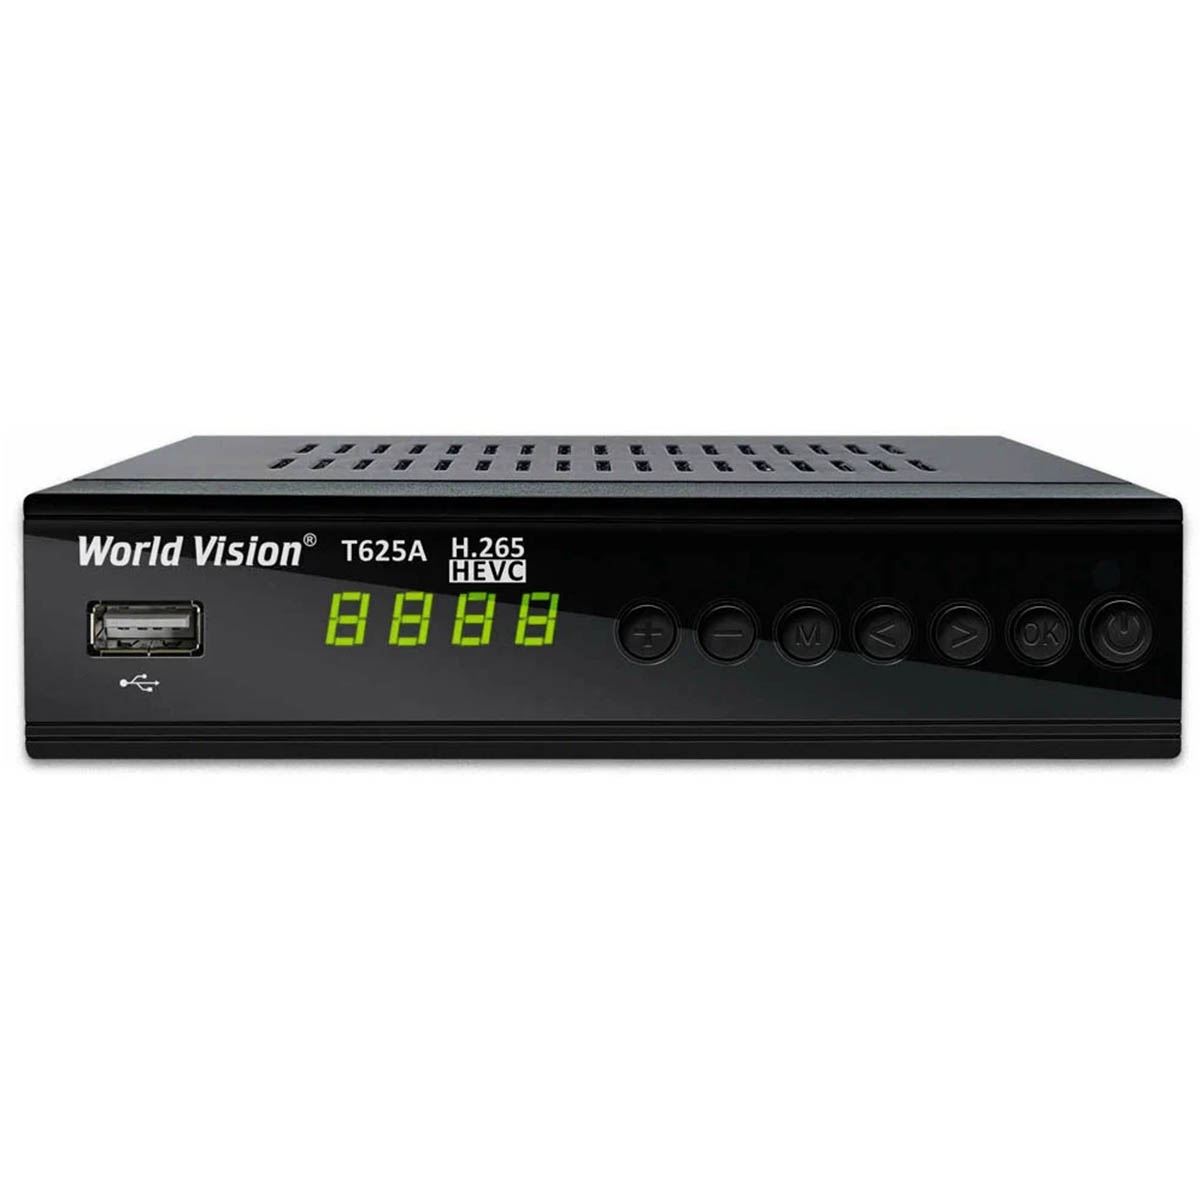 Цифровой эфирный приёмник, ТВ приставка DVB-T/T2/C World Vision T625A, цвет черный